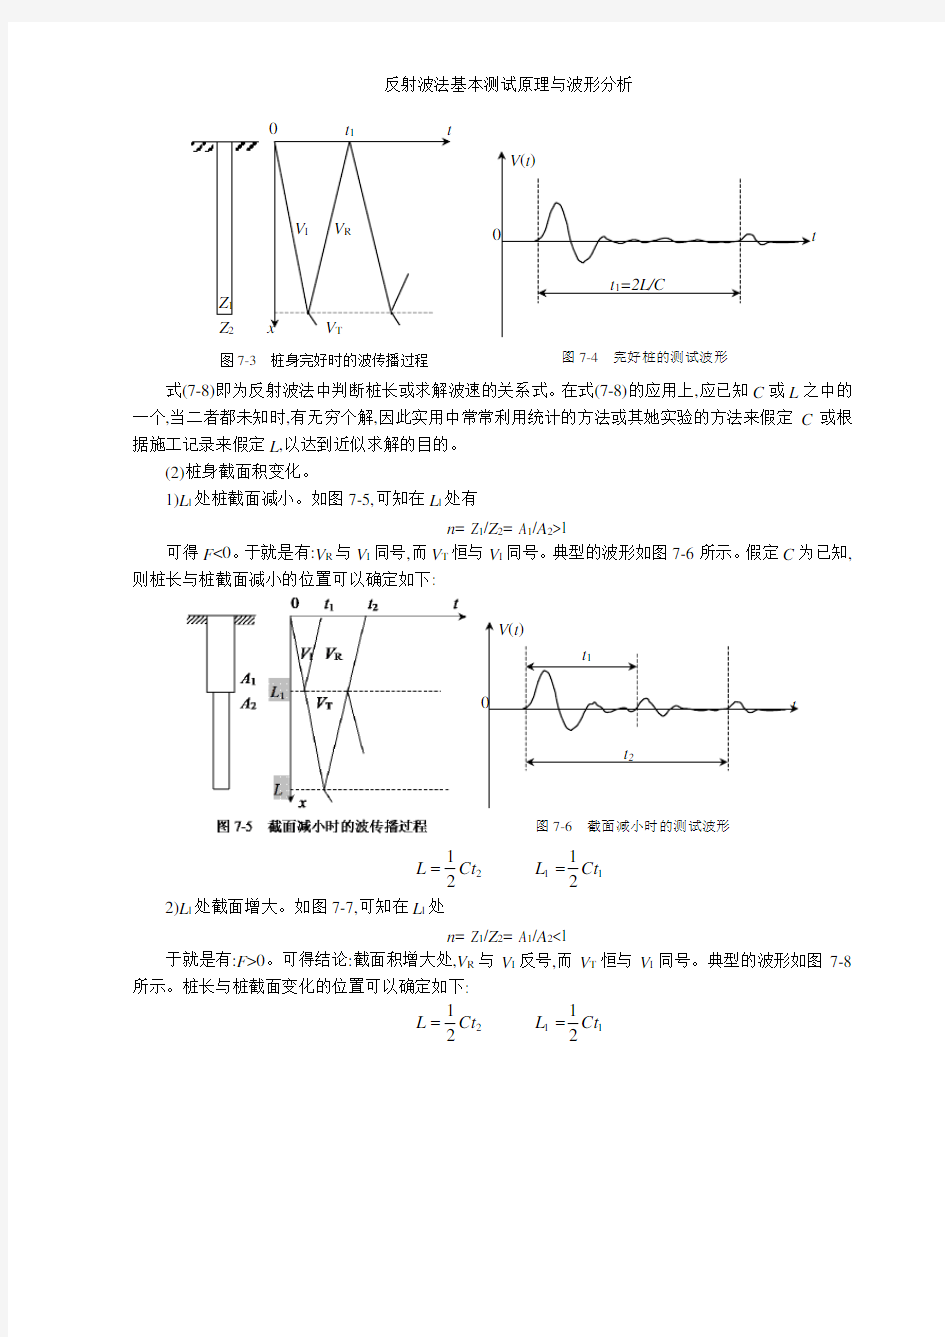 反射波法基本测试原理与波形分析